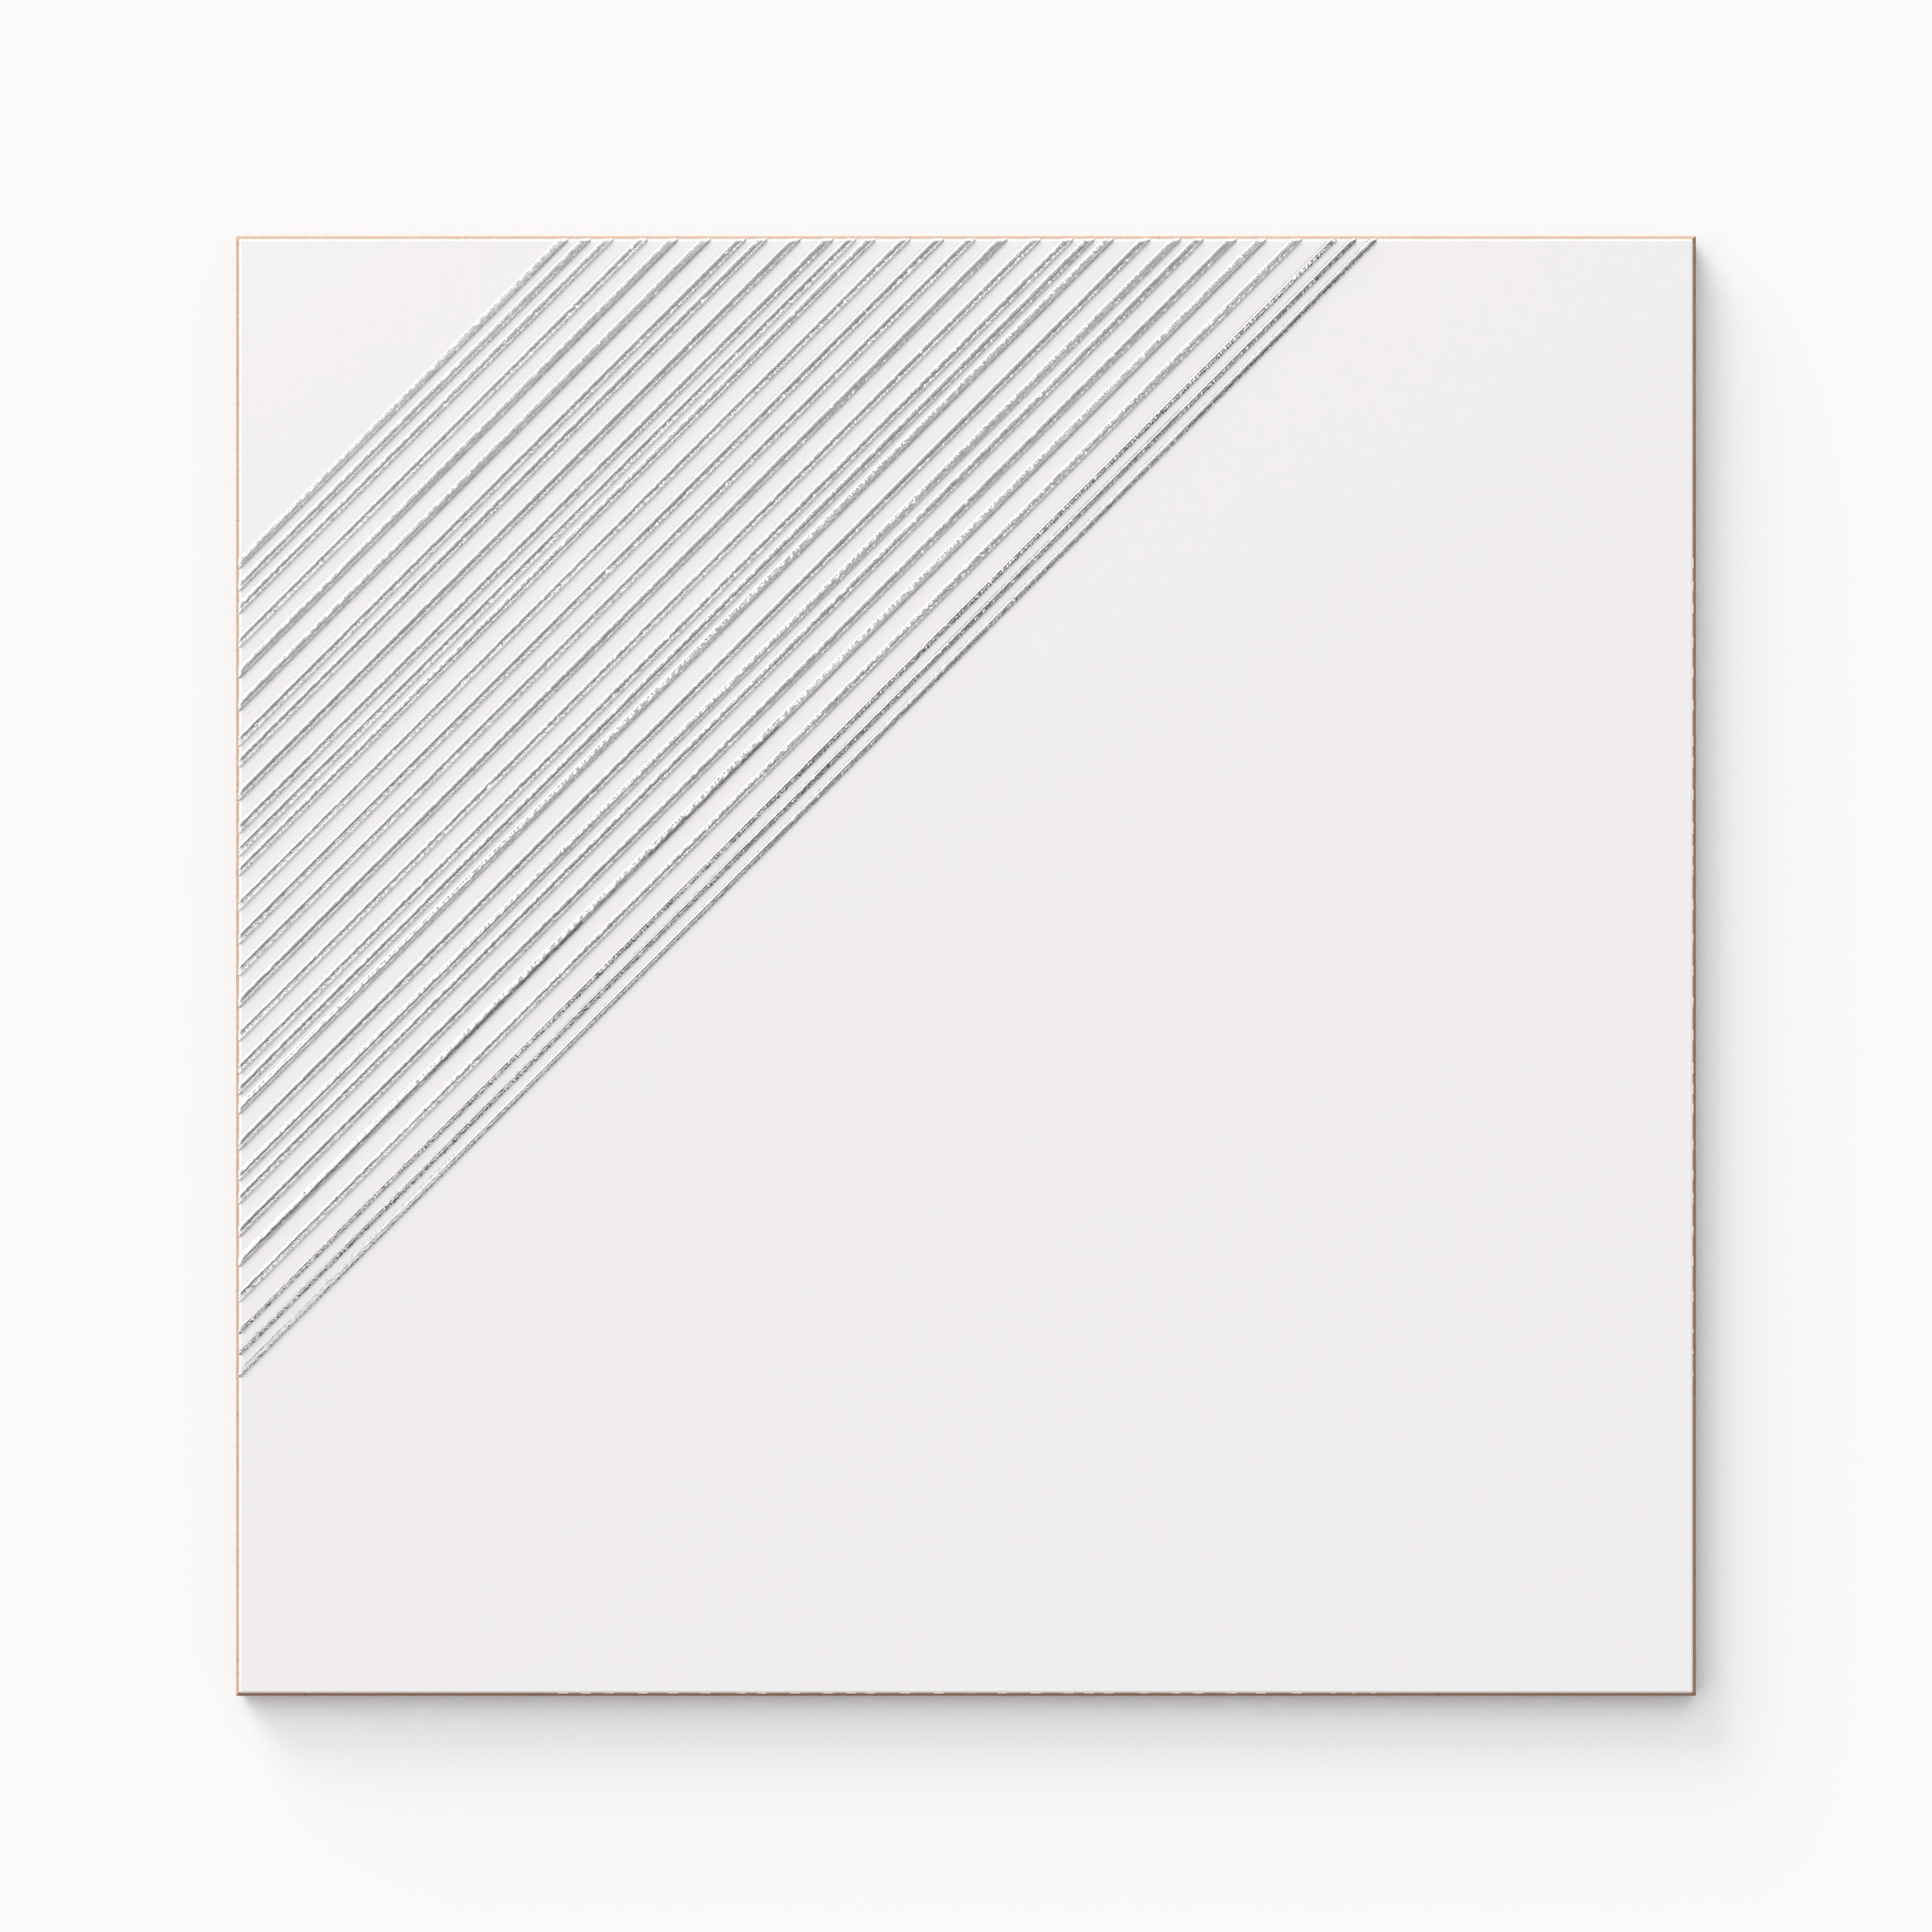 Estelle 12x12 Satin Ceramic Tile in Deco 3 White Silver Sample